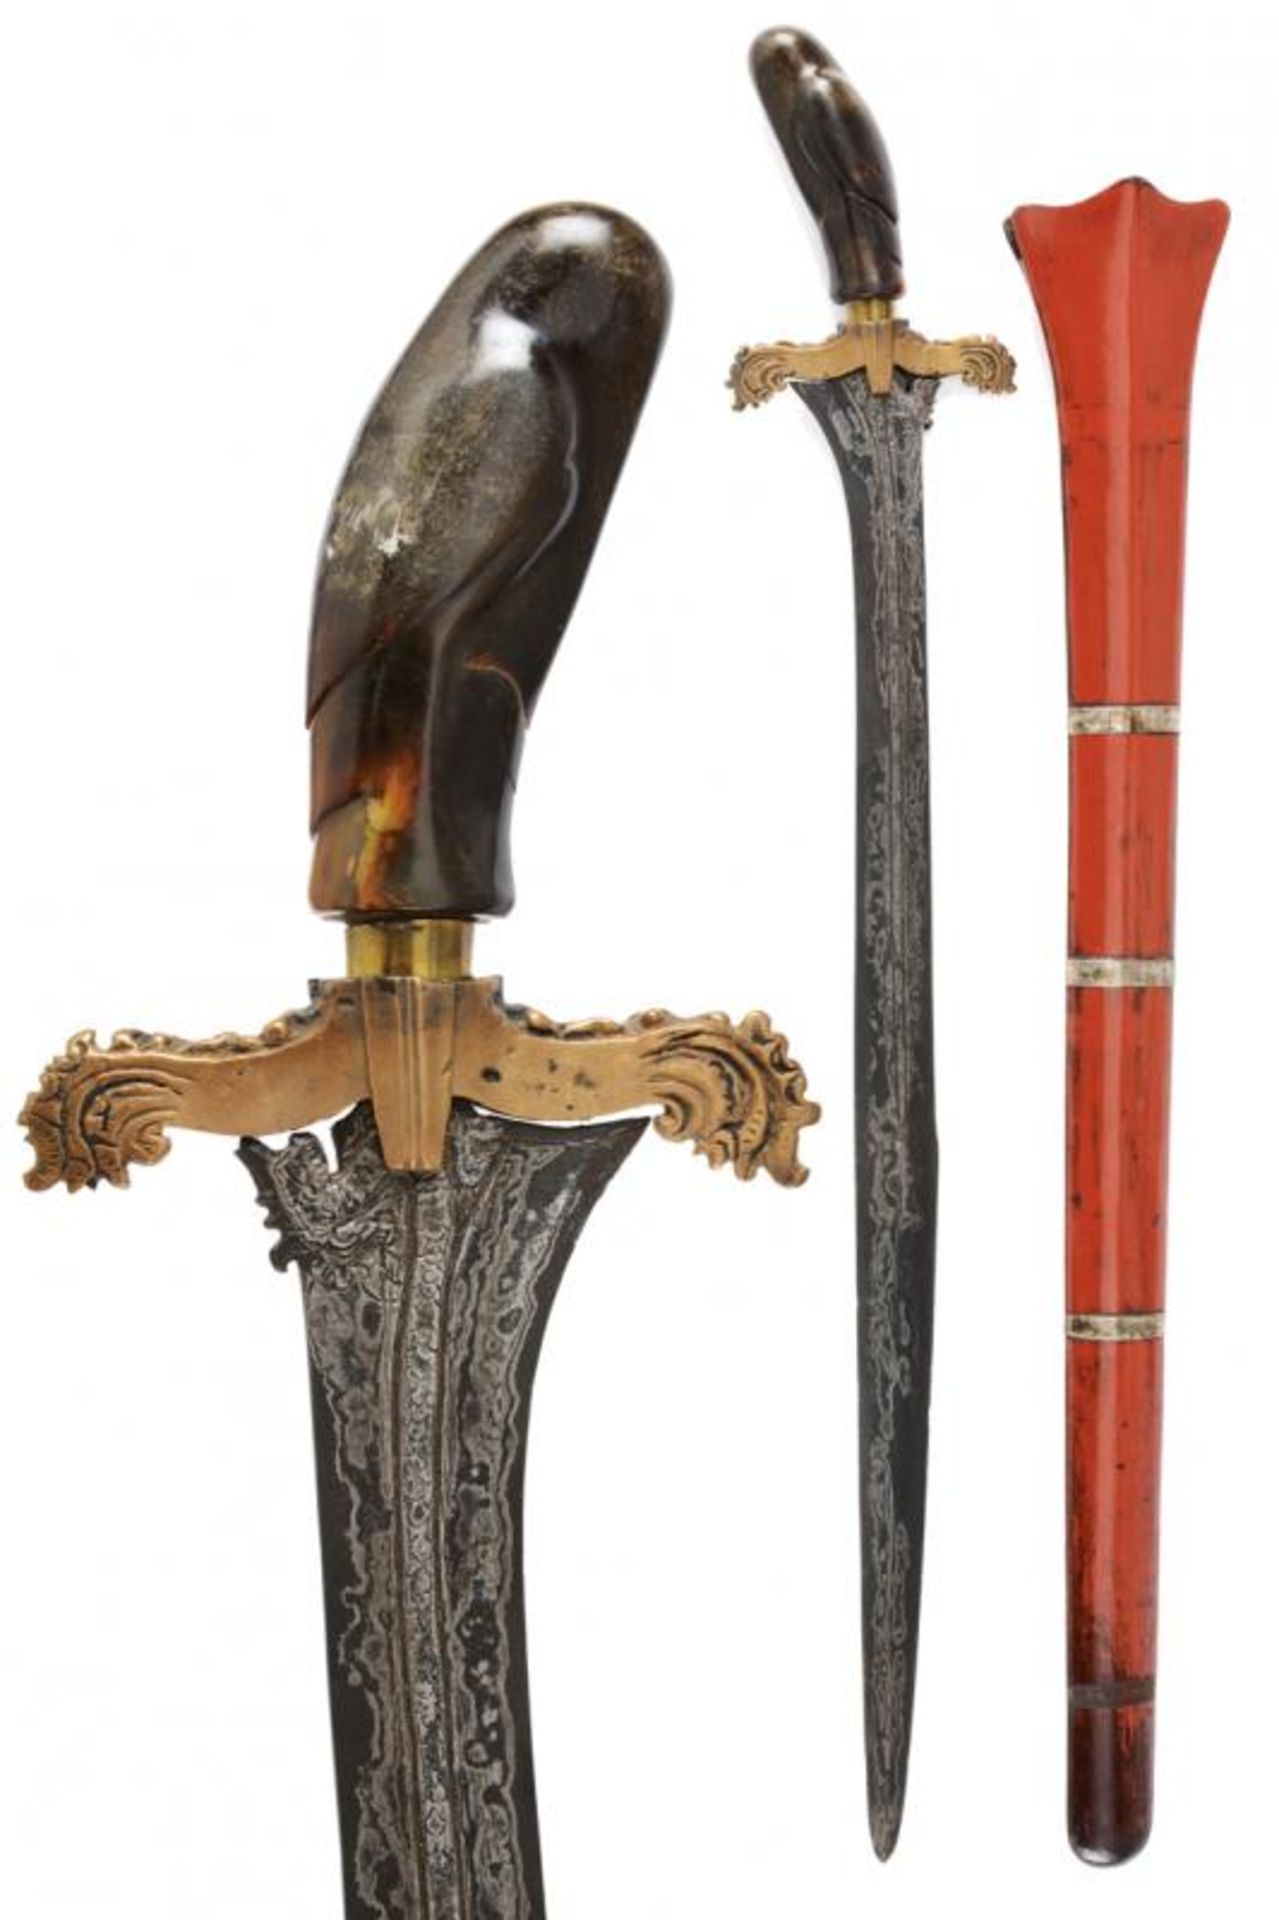 A Cundrik (sword)